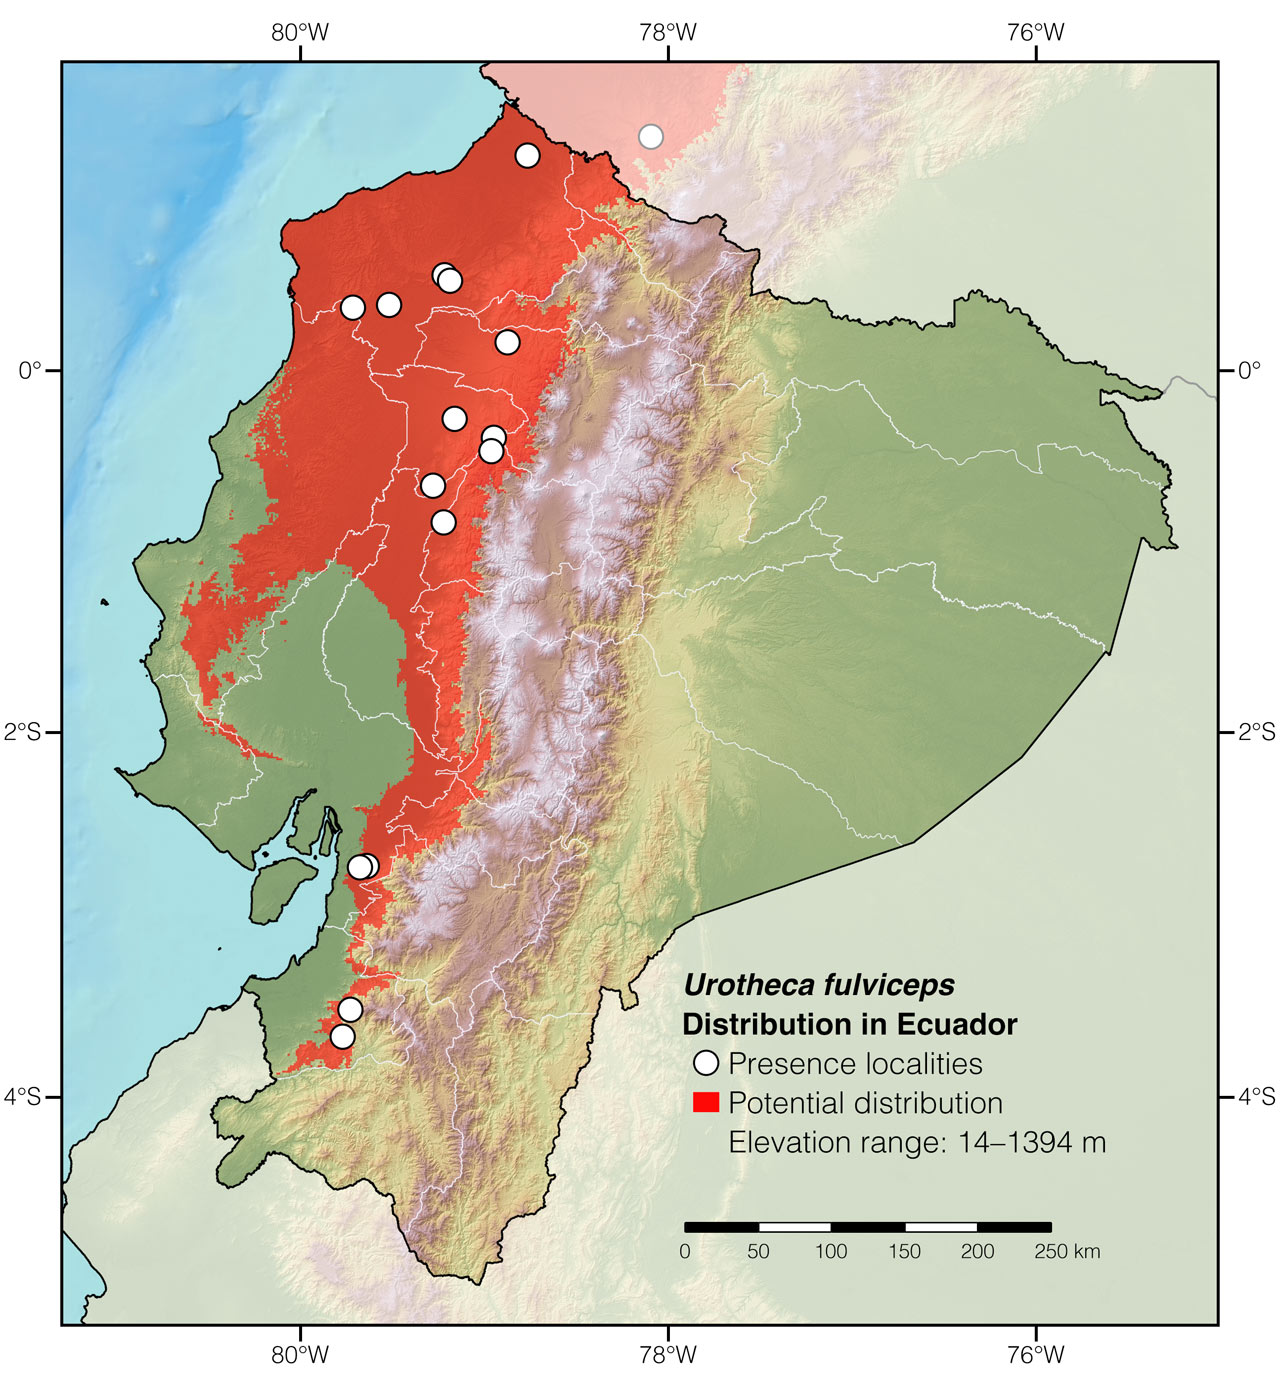 Distribution of Urotheca fulviceps in Ecuador